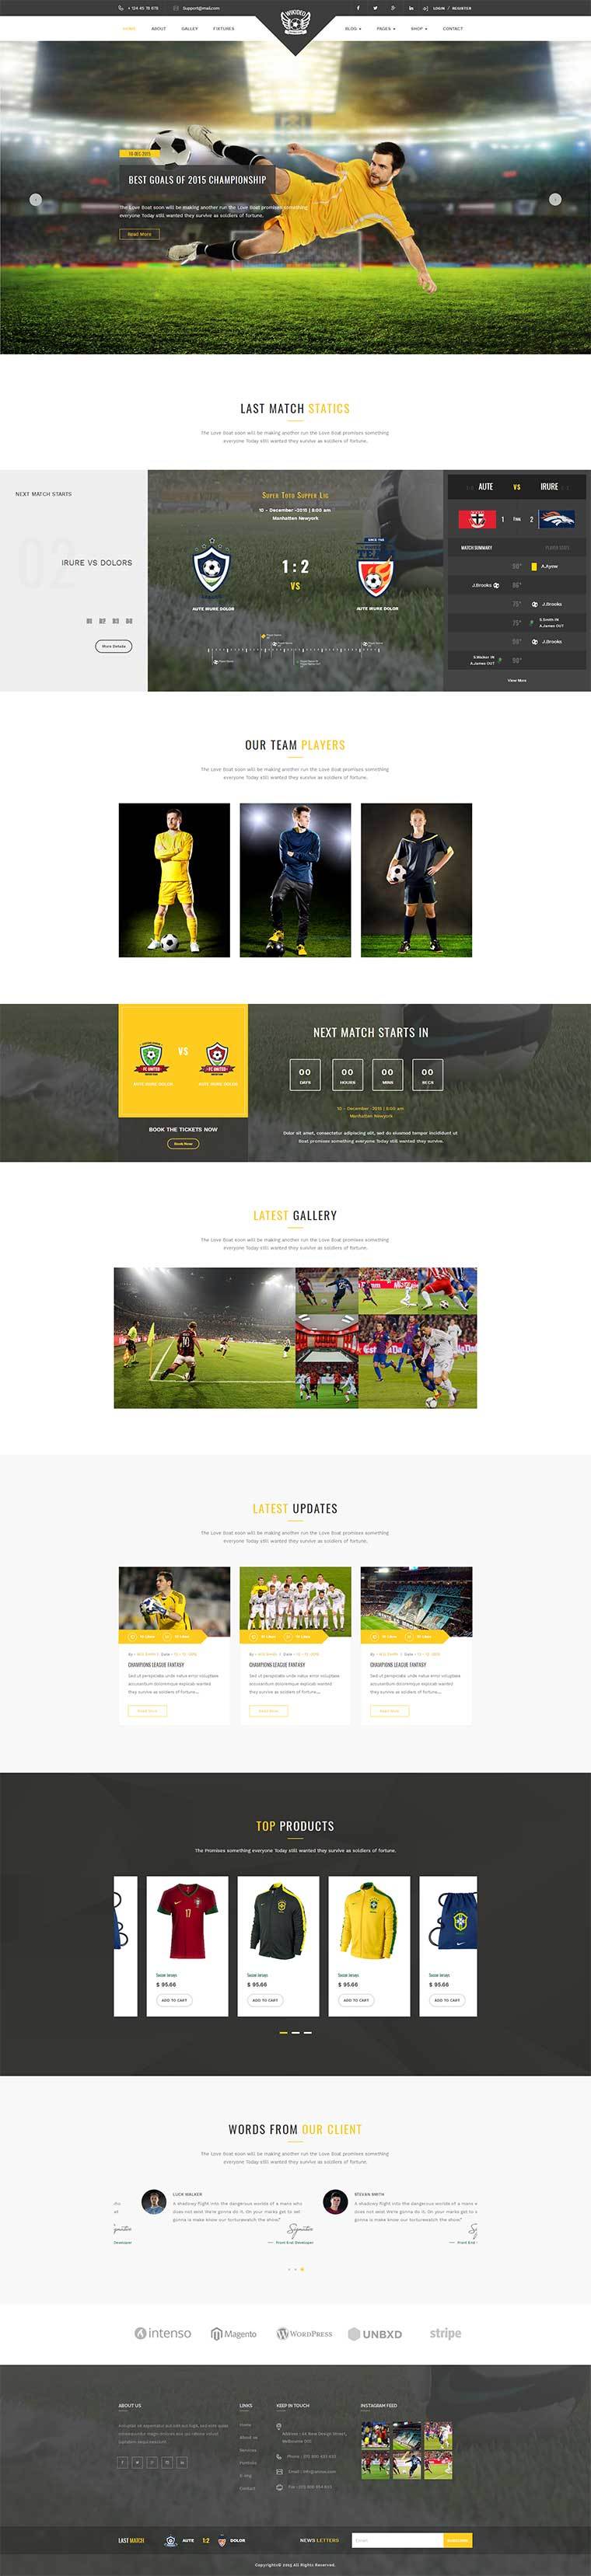 体育用品公司网站模板.jpg